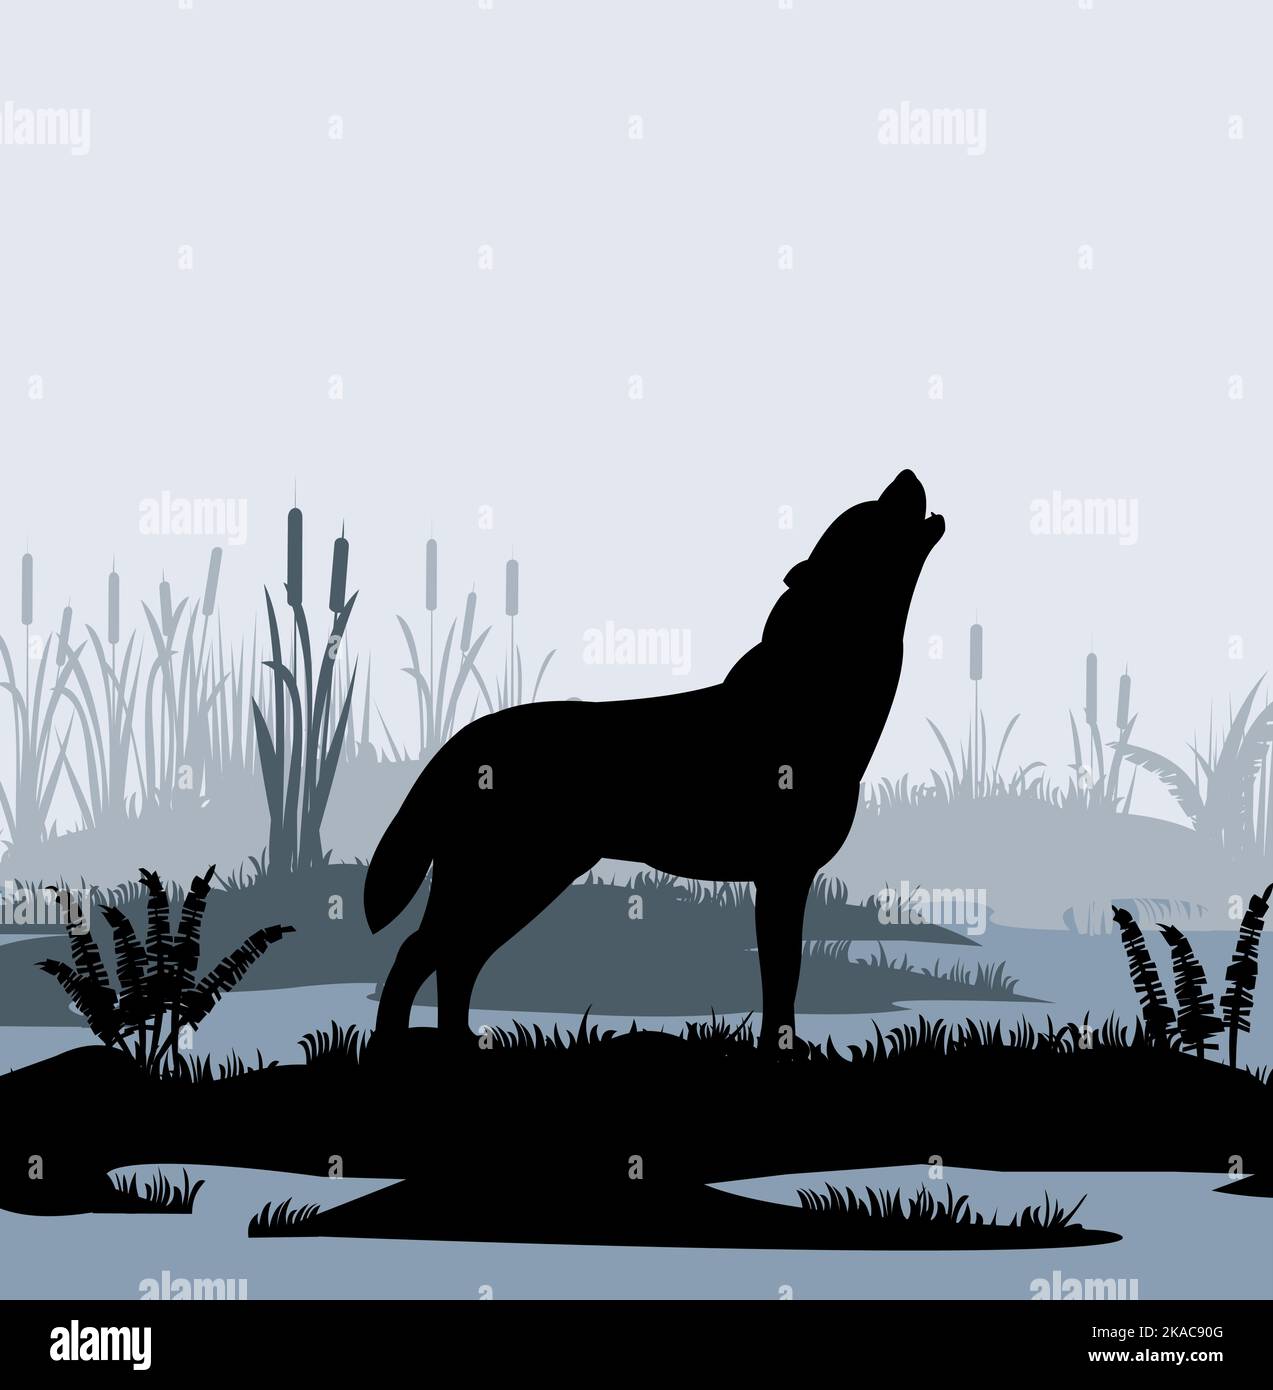 Einsamer Wolf heult im Sumpf im Nebel zwischen Schilf. Silhouettenbild. Wildes Tier in der Natur. Predator unter natürlichen Bedingungen. Vektor Stock Vektor